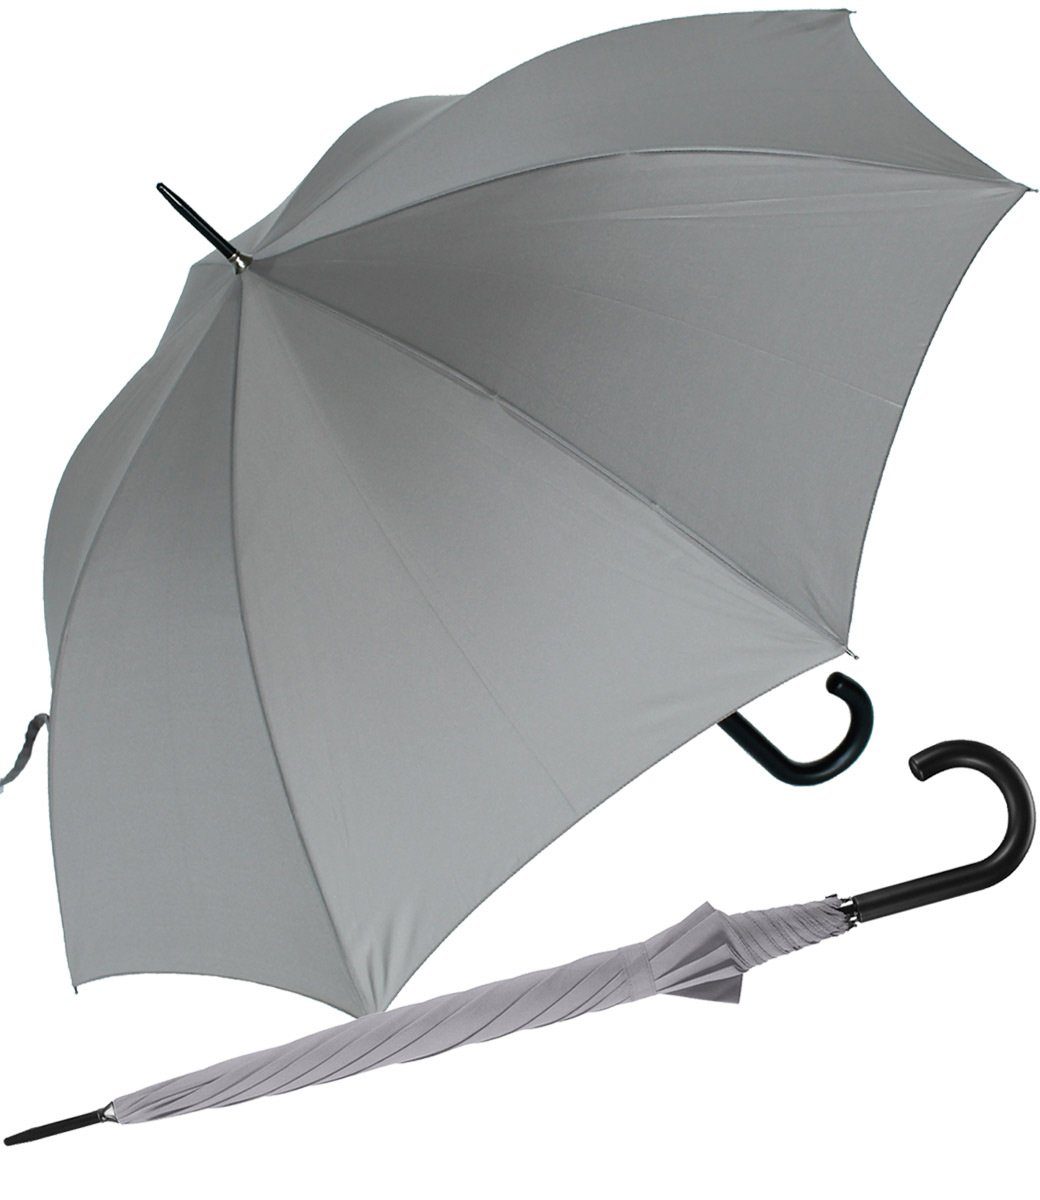 RS-Versand Langregenschirm großer stabiler Regenschirm mit Auf-Automatik, für Damen und Herren in vielen modischen Farben grau